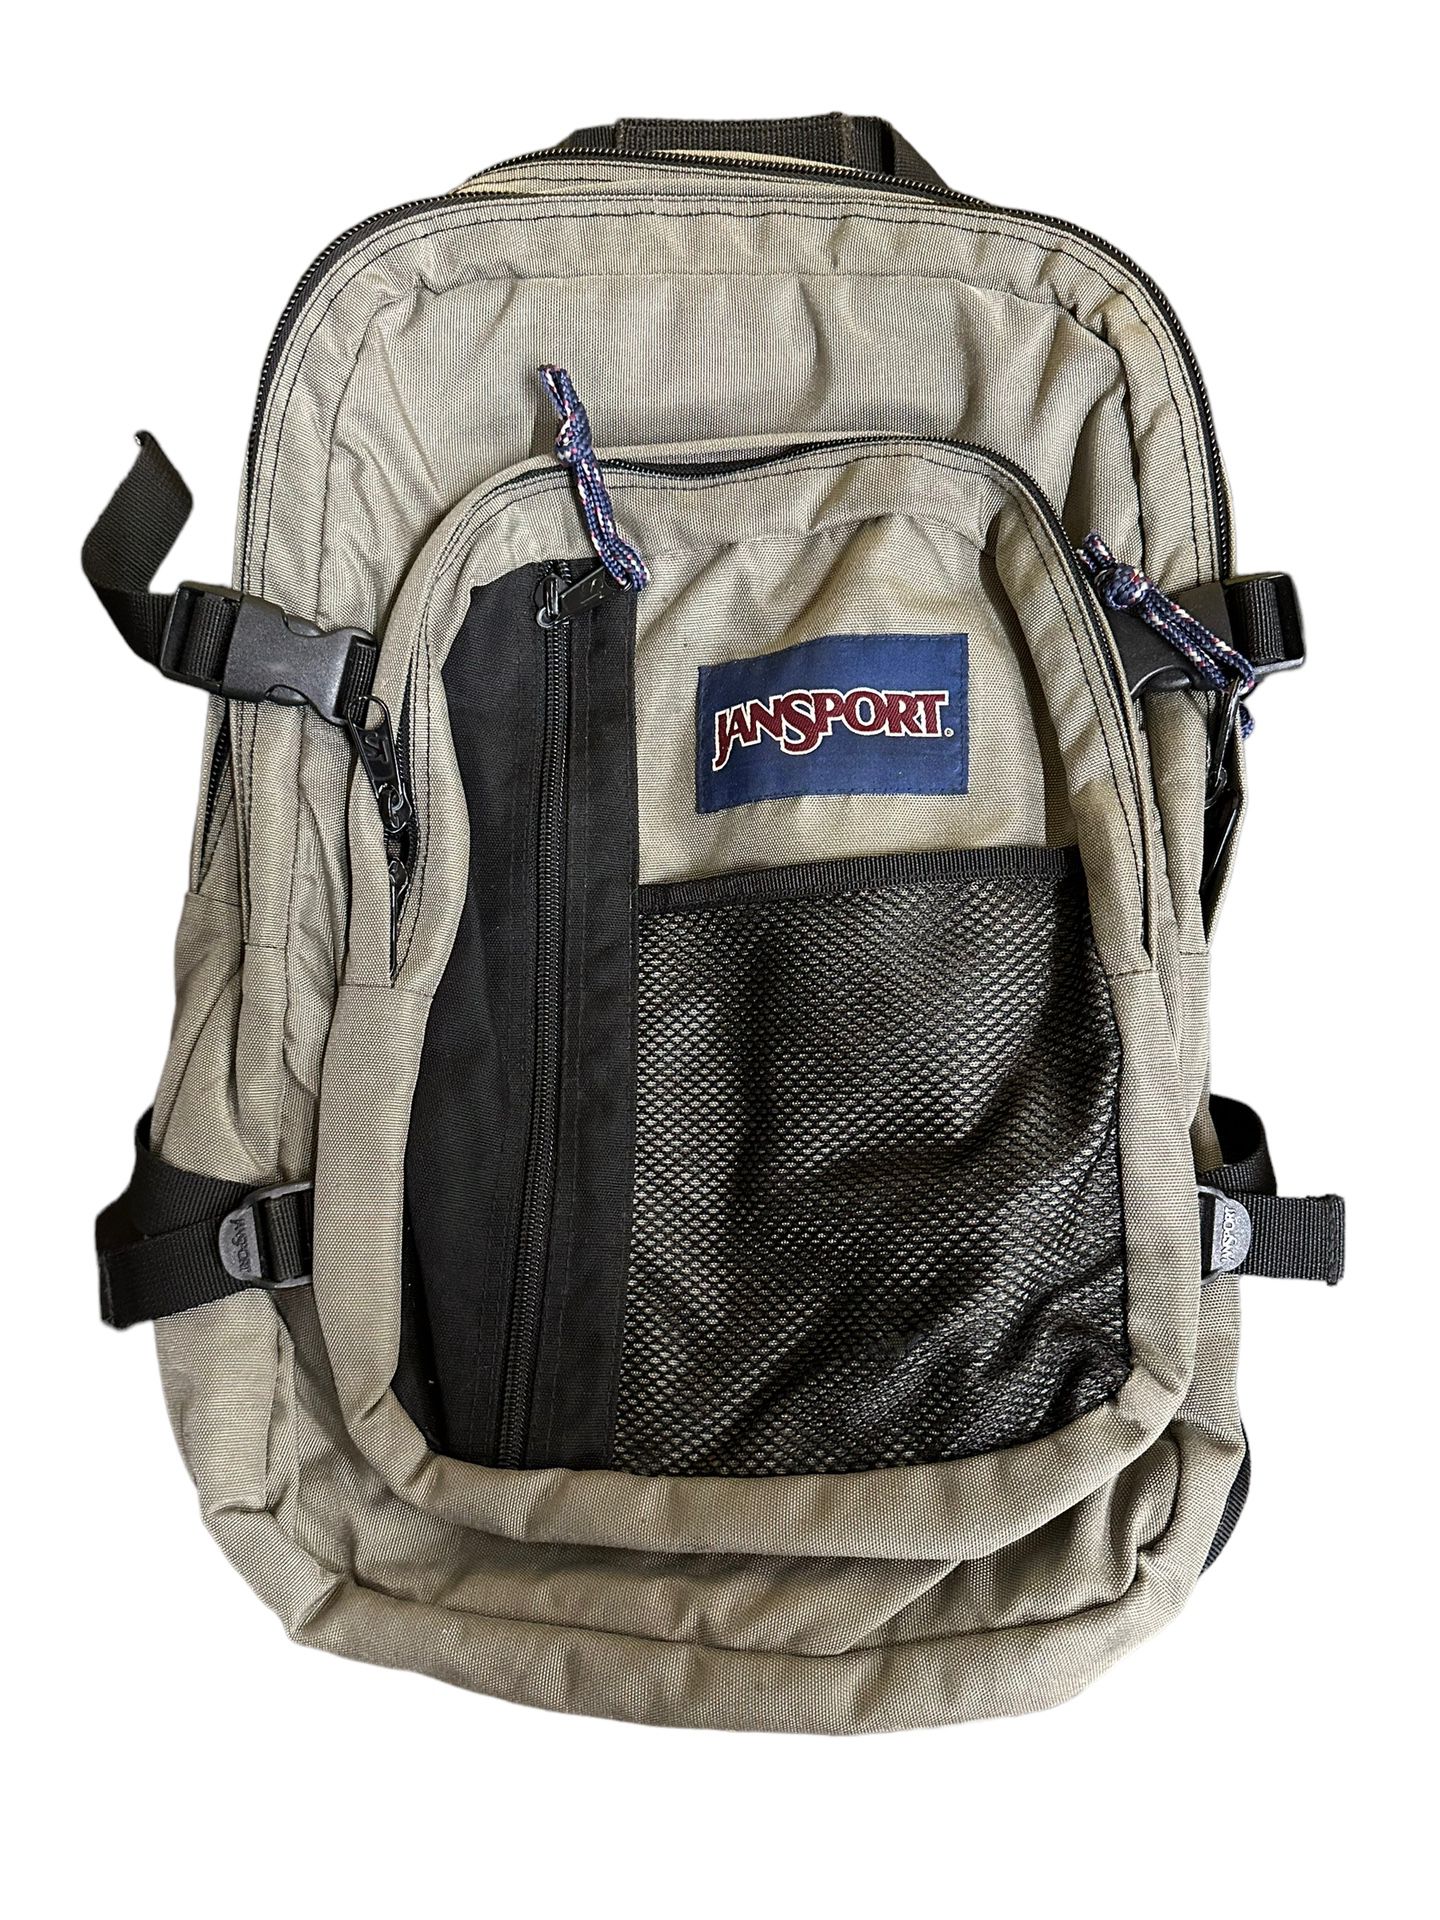 JanSport Big Student Grayish Backpack College School Work Book Bag 4 Pocket